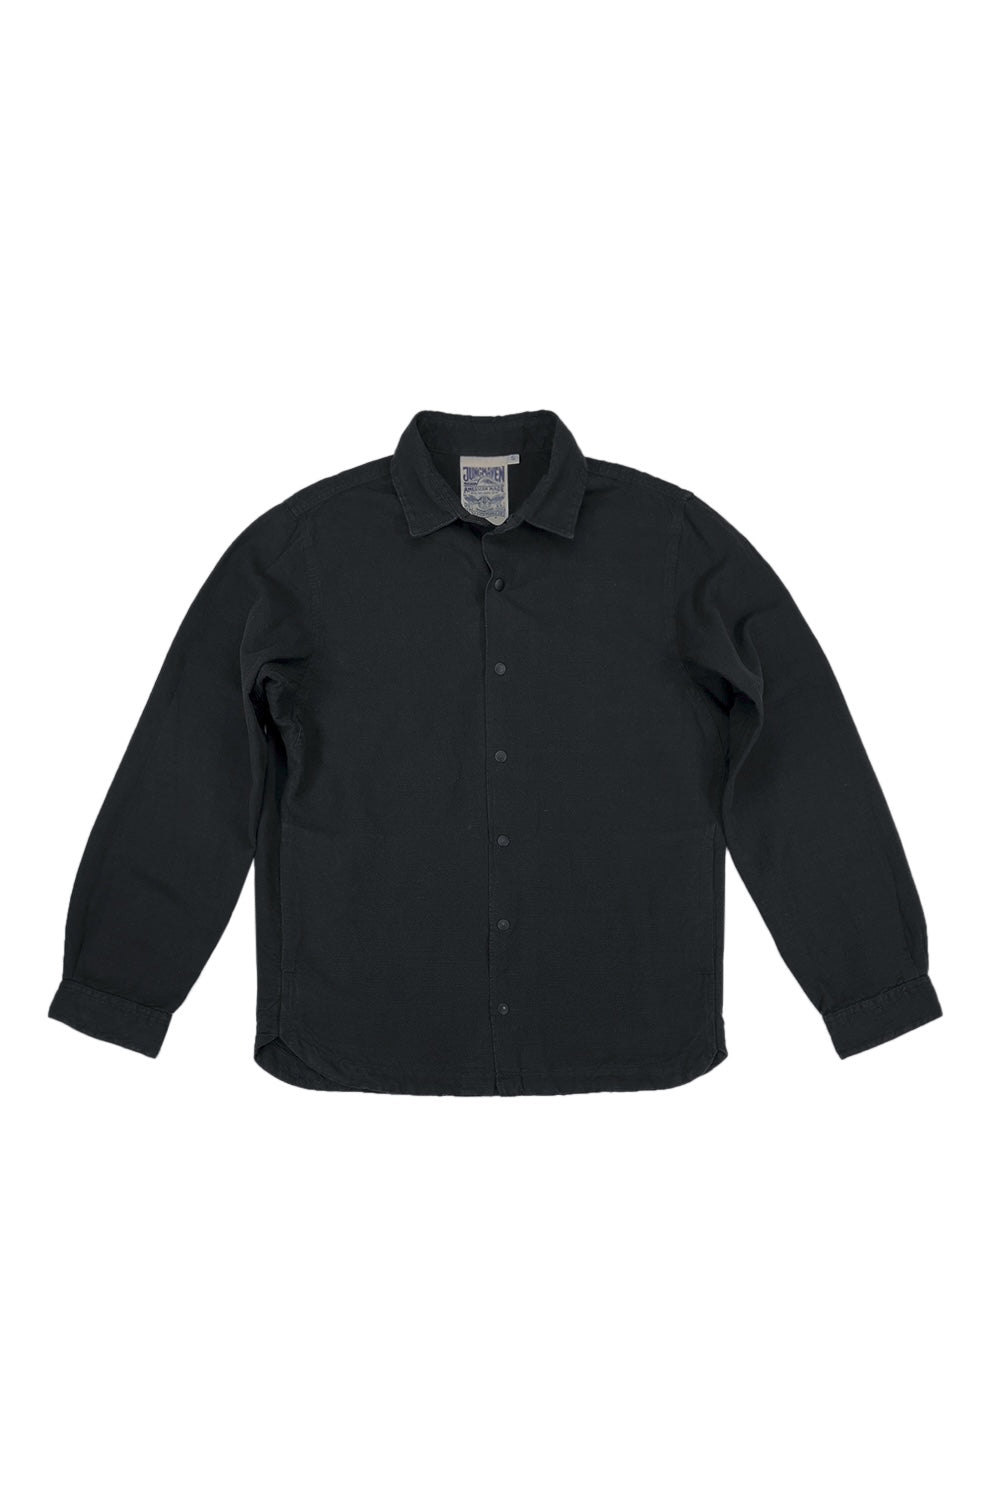 Sandpoint Snap Jacket | Jungmaven Hemp Clothing & Accessories / Color: Black